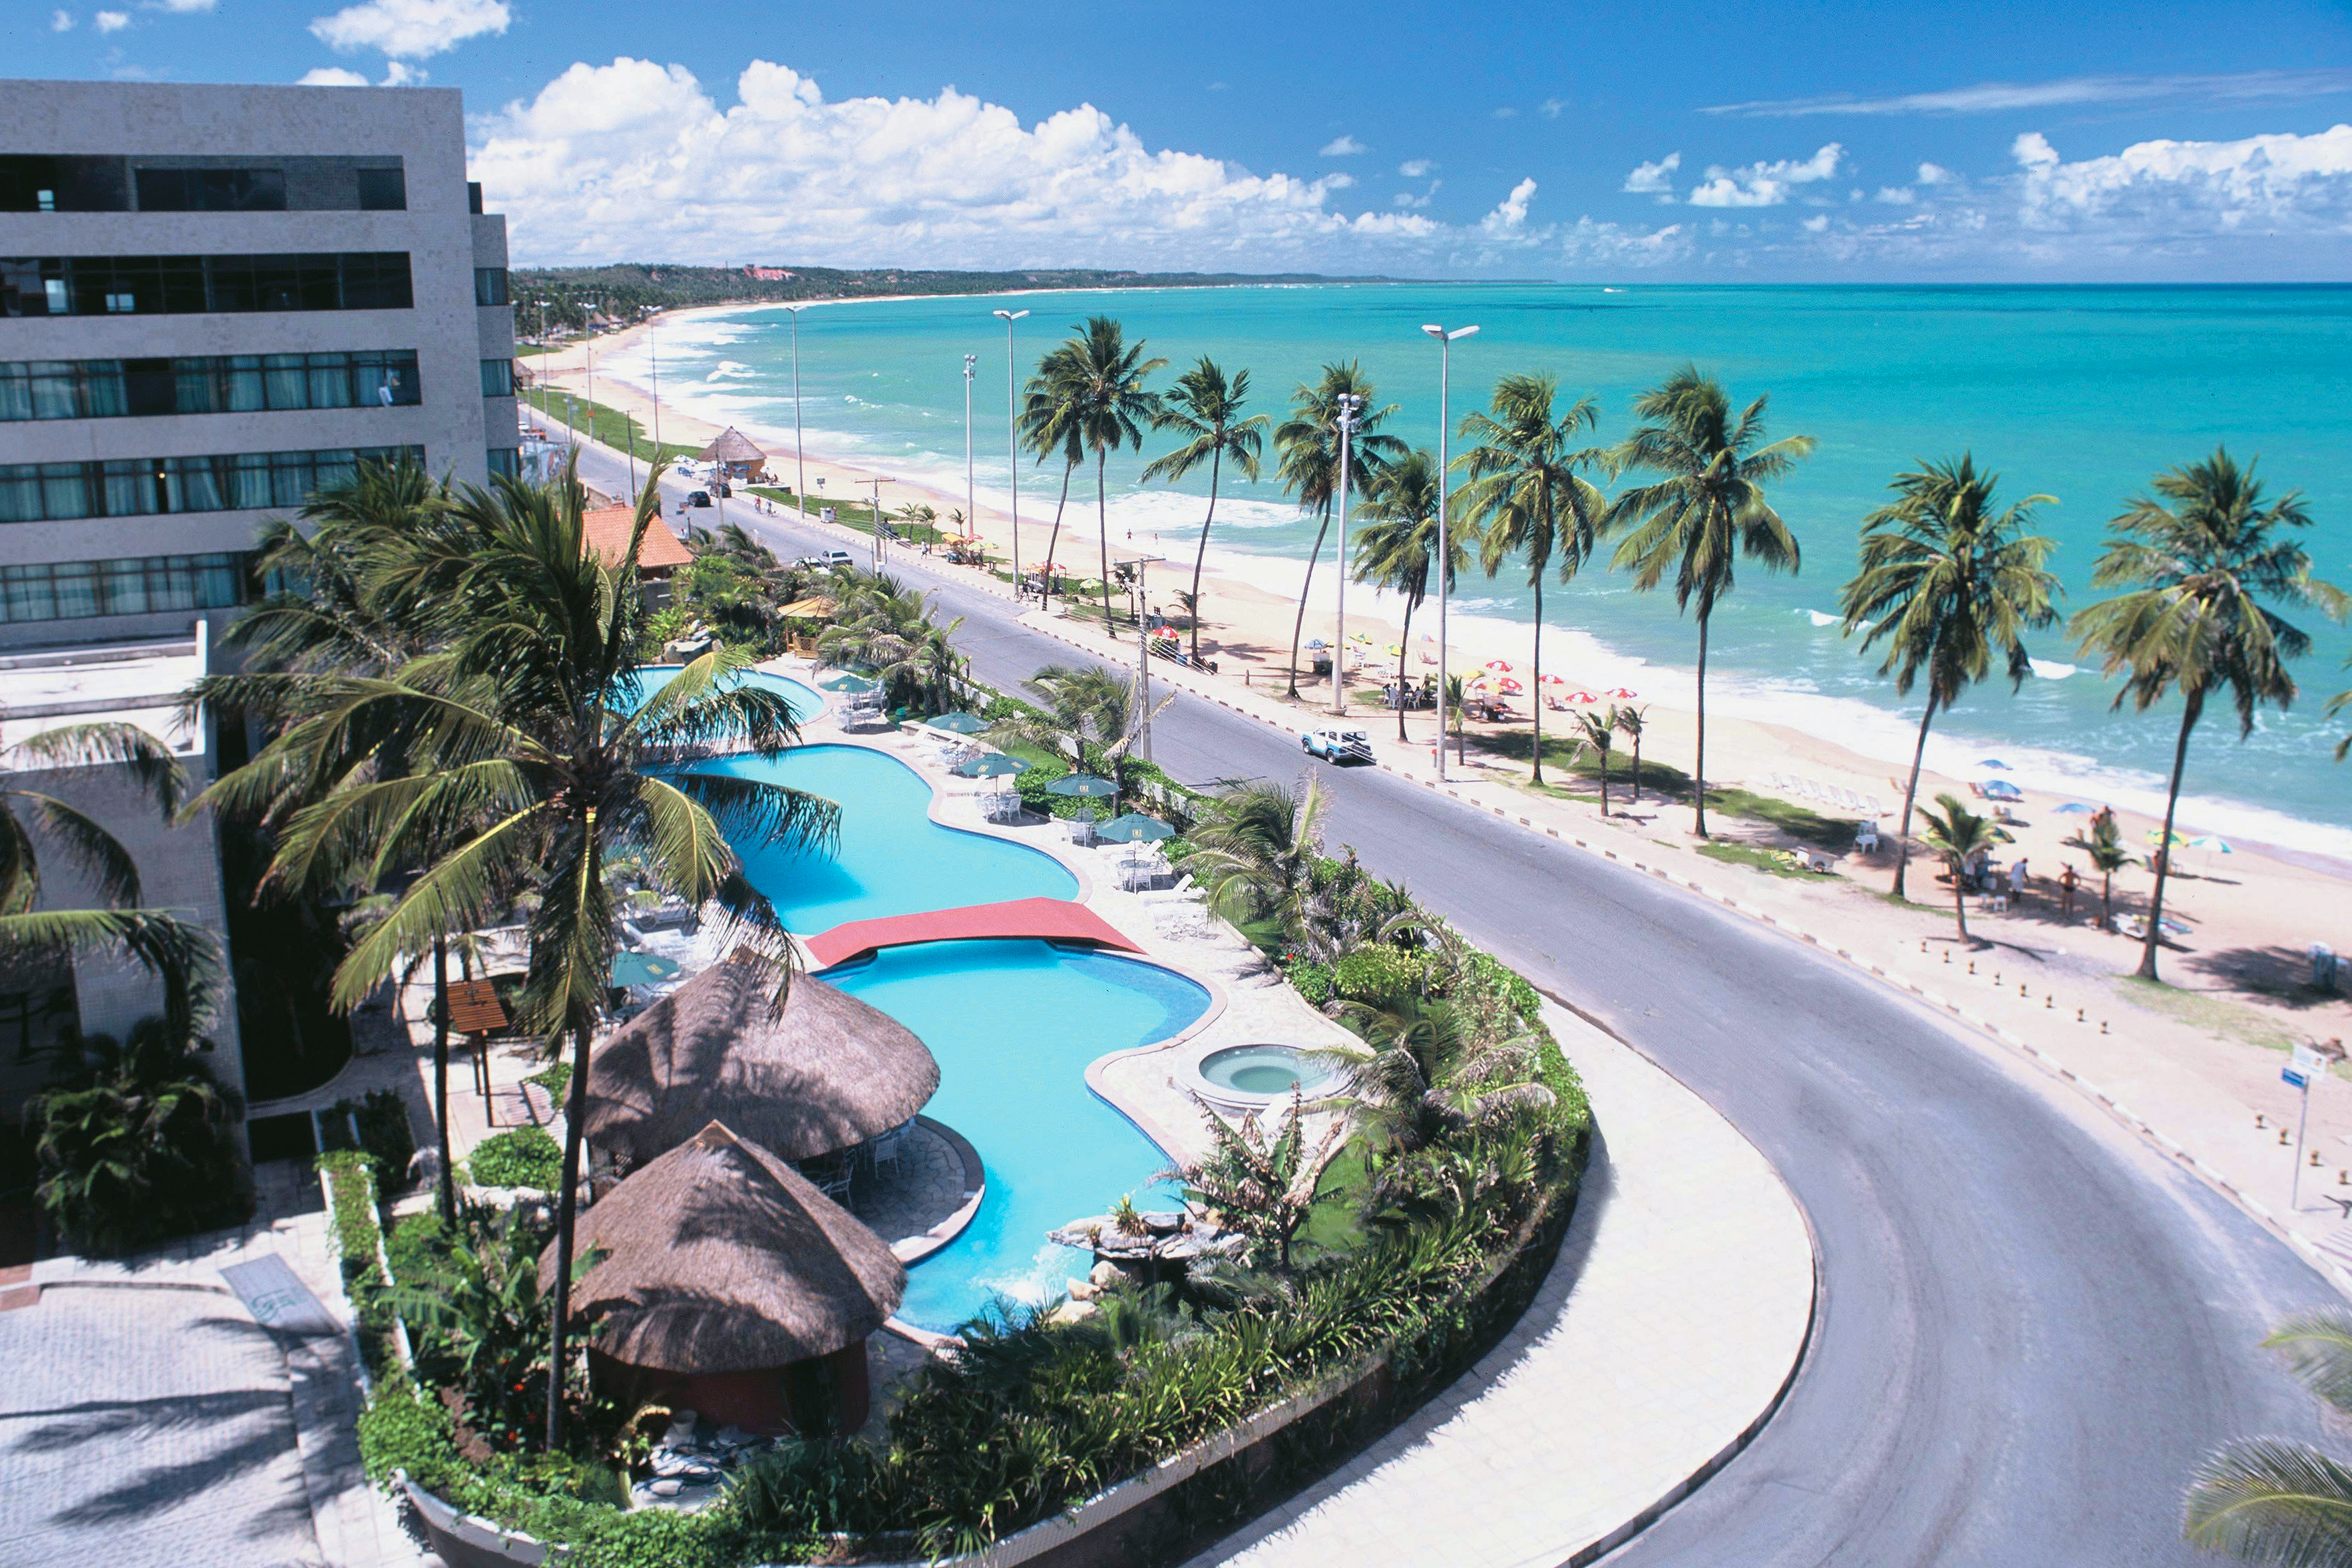 Fachada do hotel Ritz Lagoa da Anta, e vista da Praia Lagoa da Anta em Maceió, Alagoas